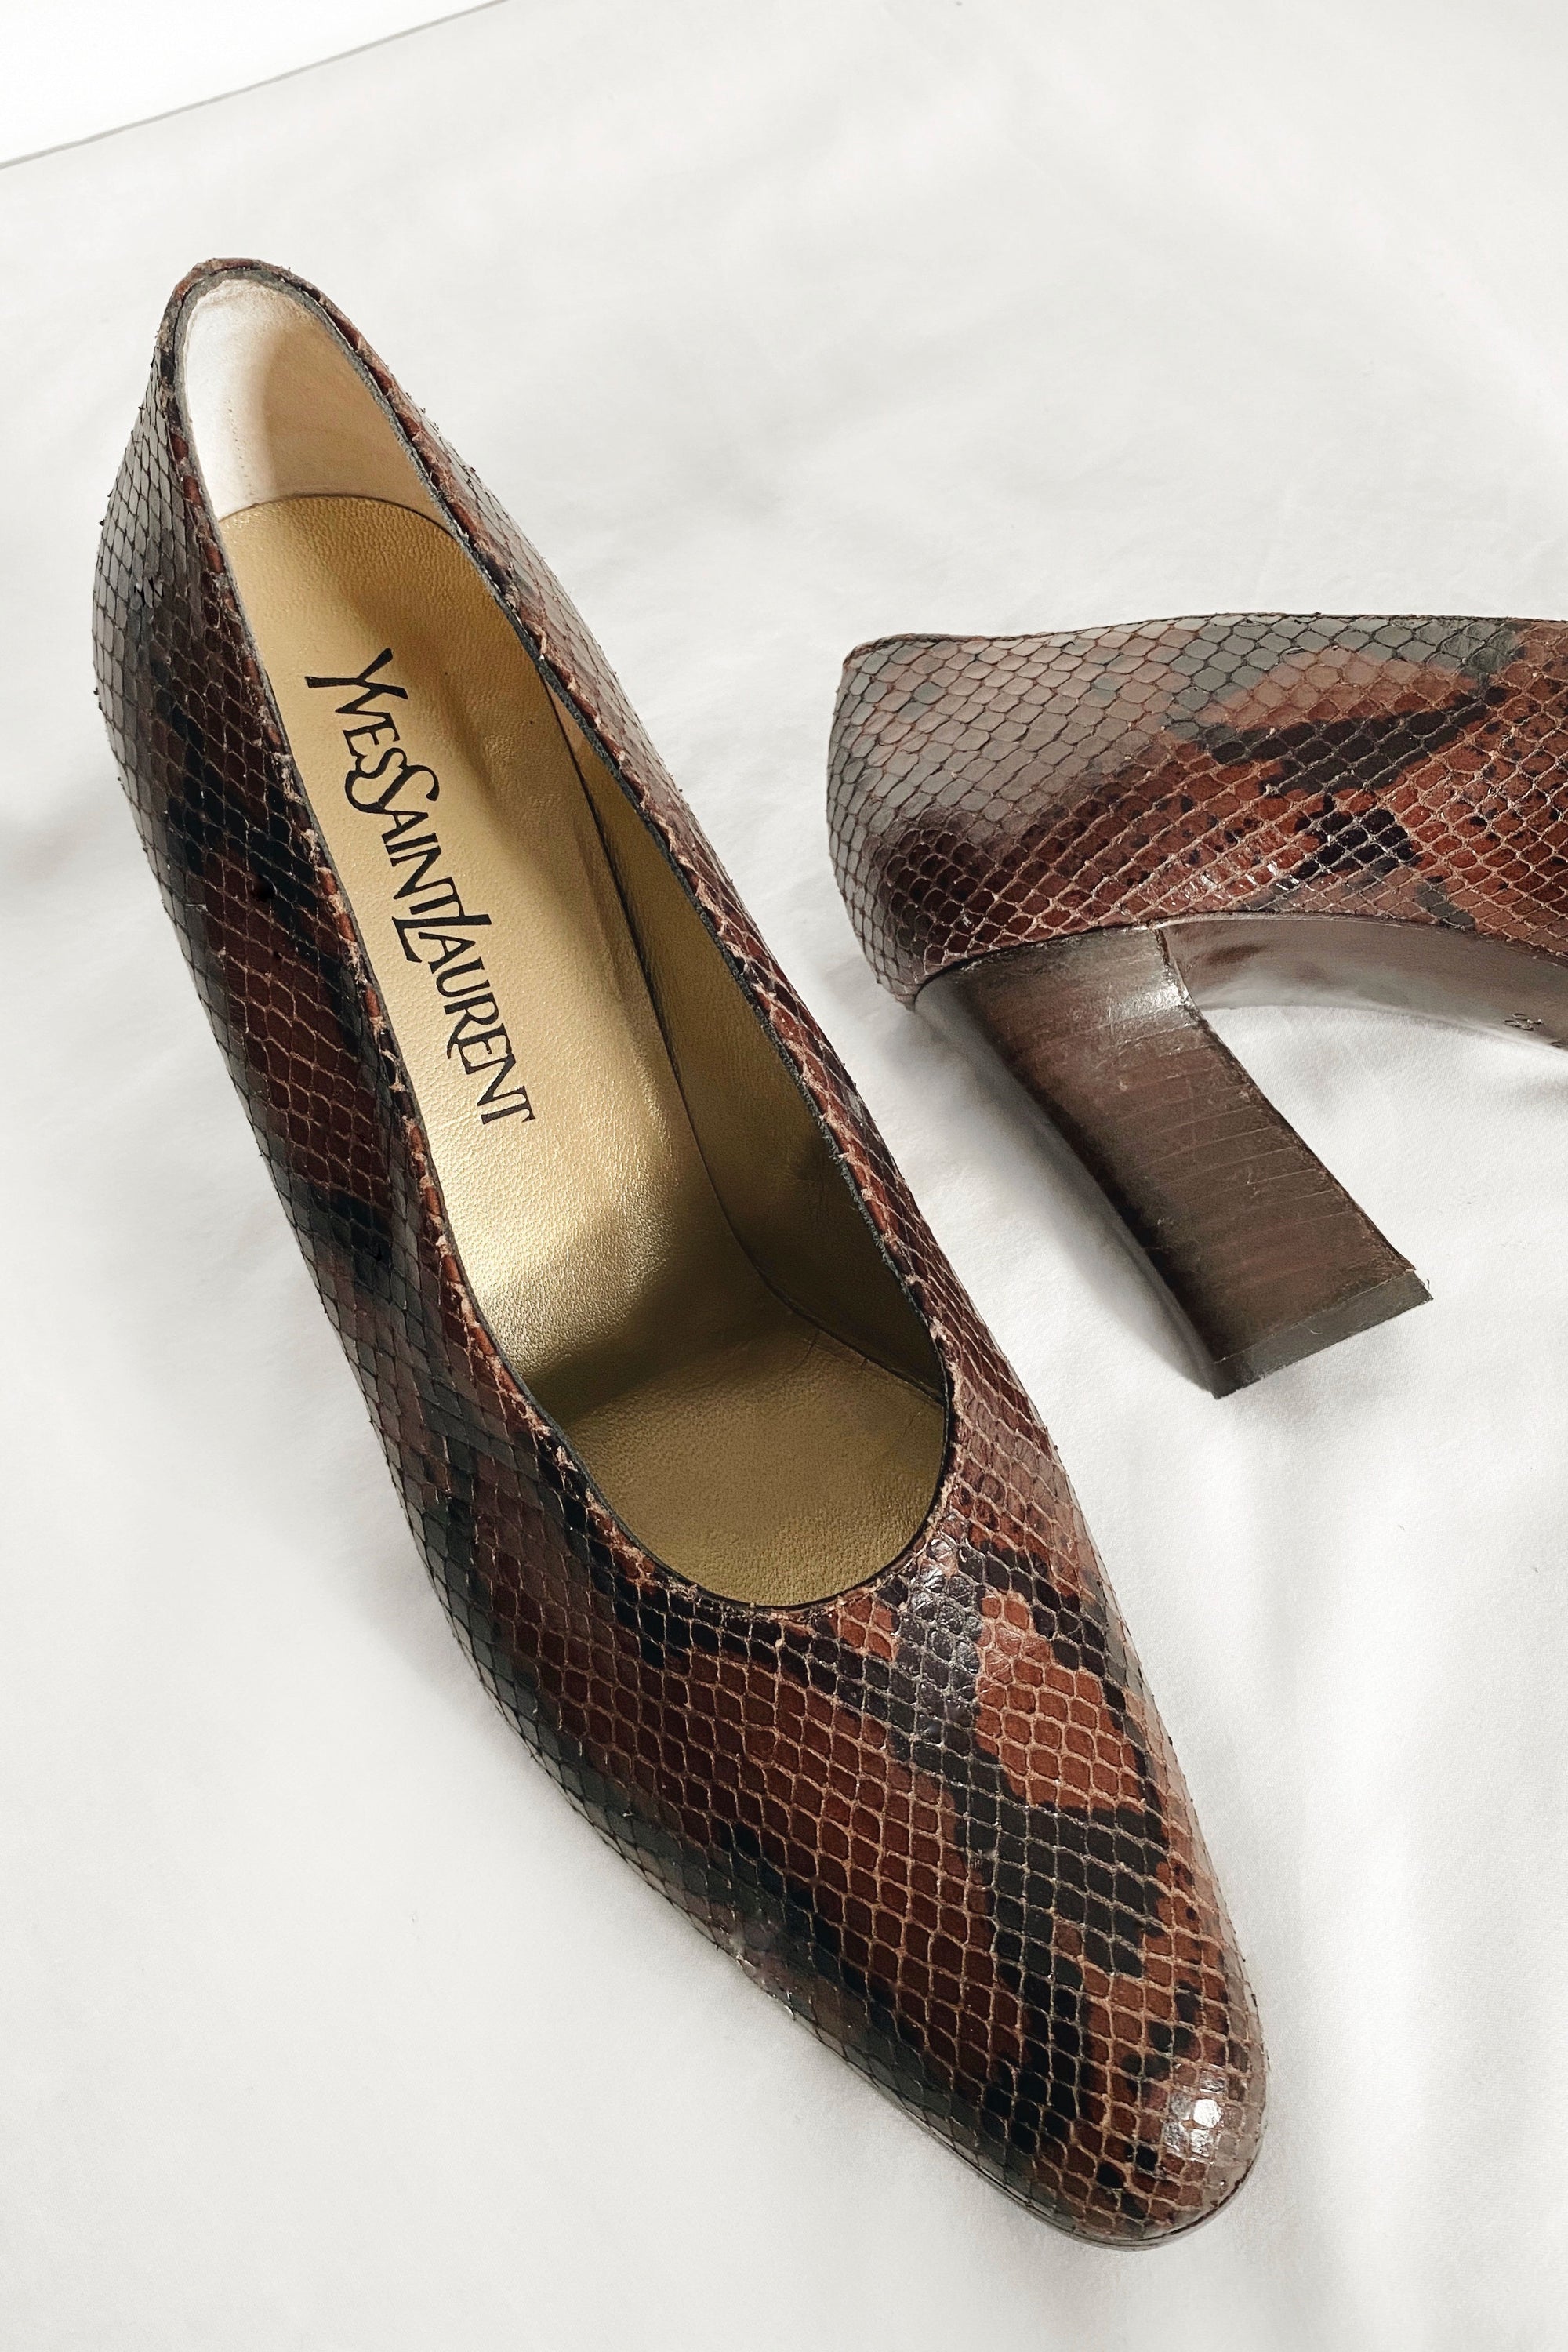 Yves Saint Laurent Vintage Court Shoes Size 38 (UK 5)